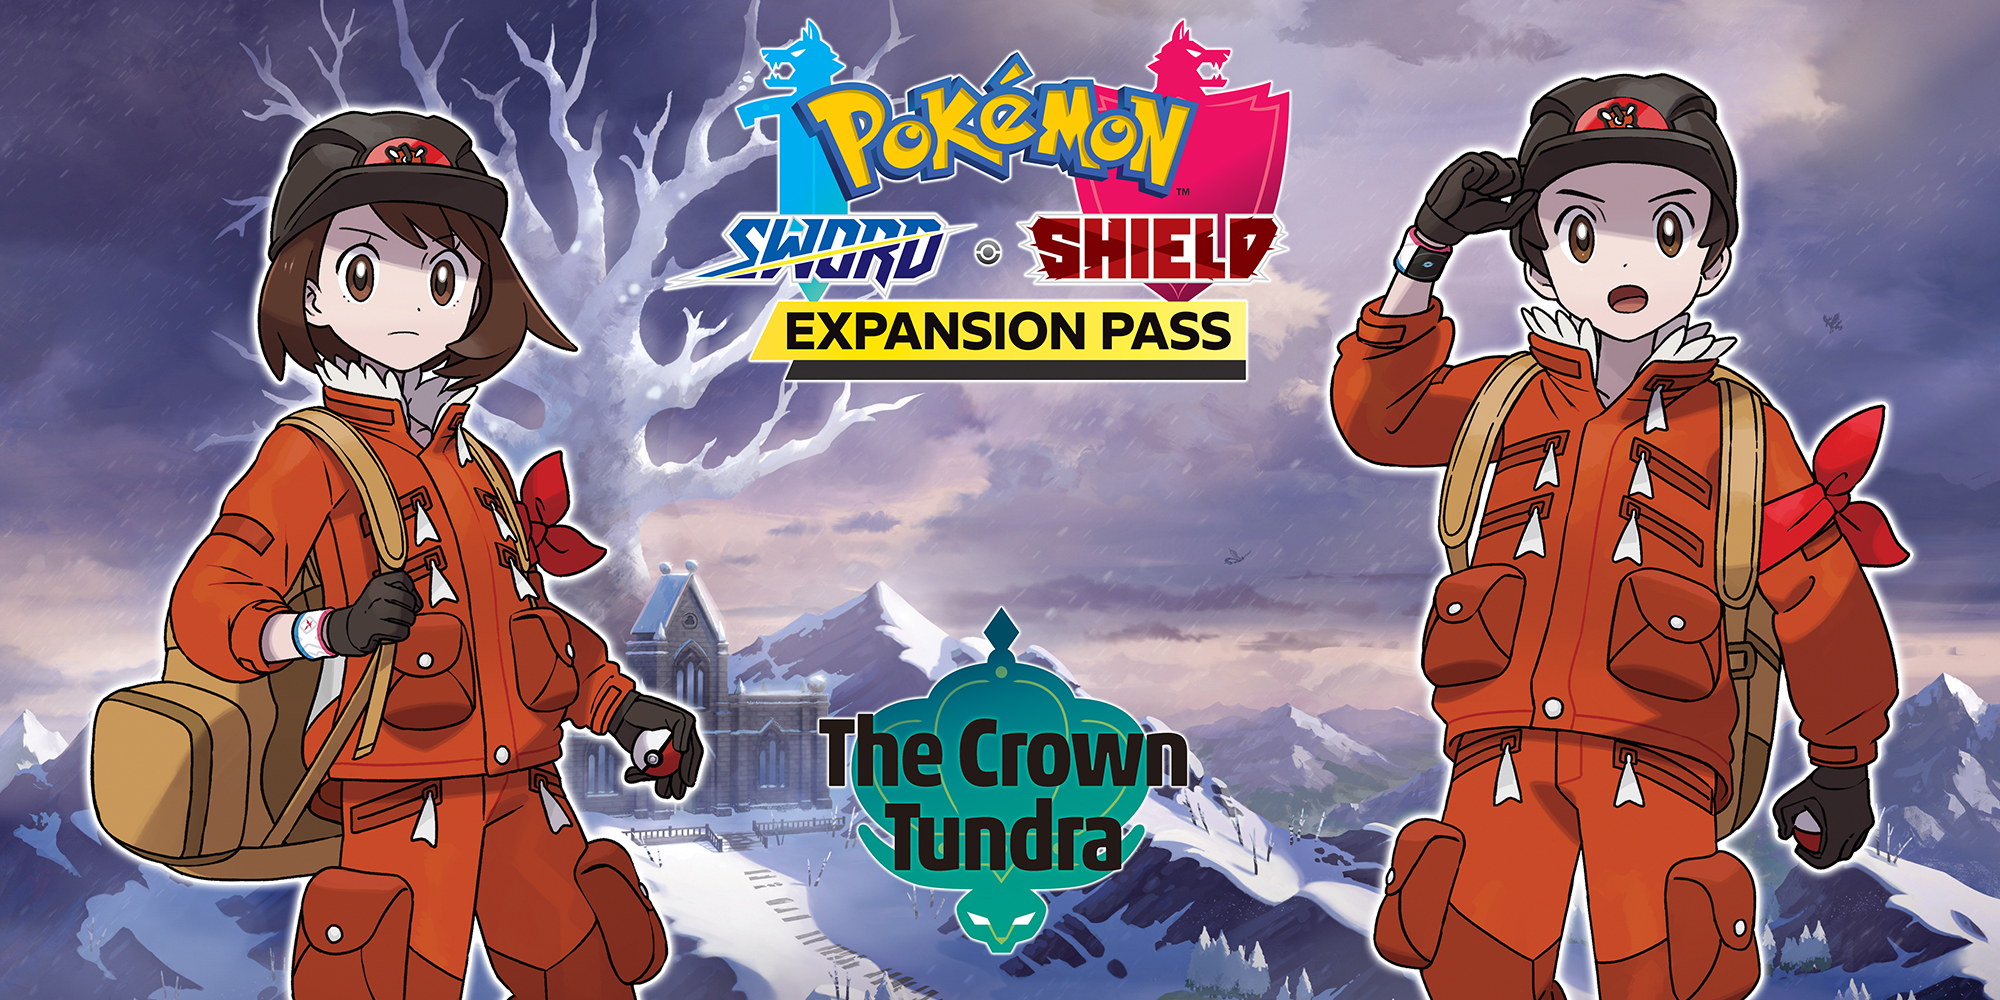 Novo Pokémon Mítico de Sword & Shield é revelado